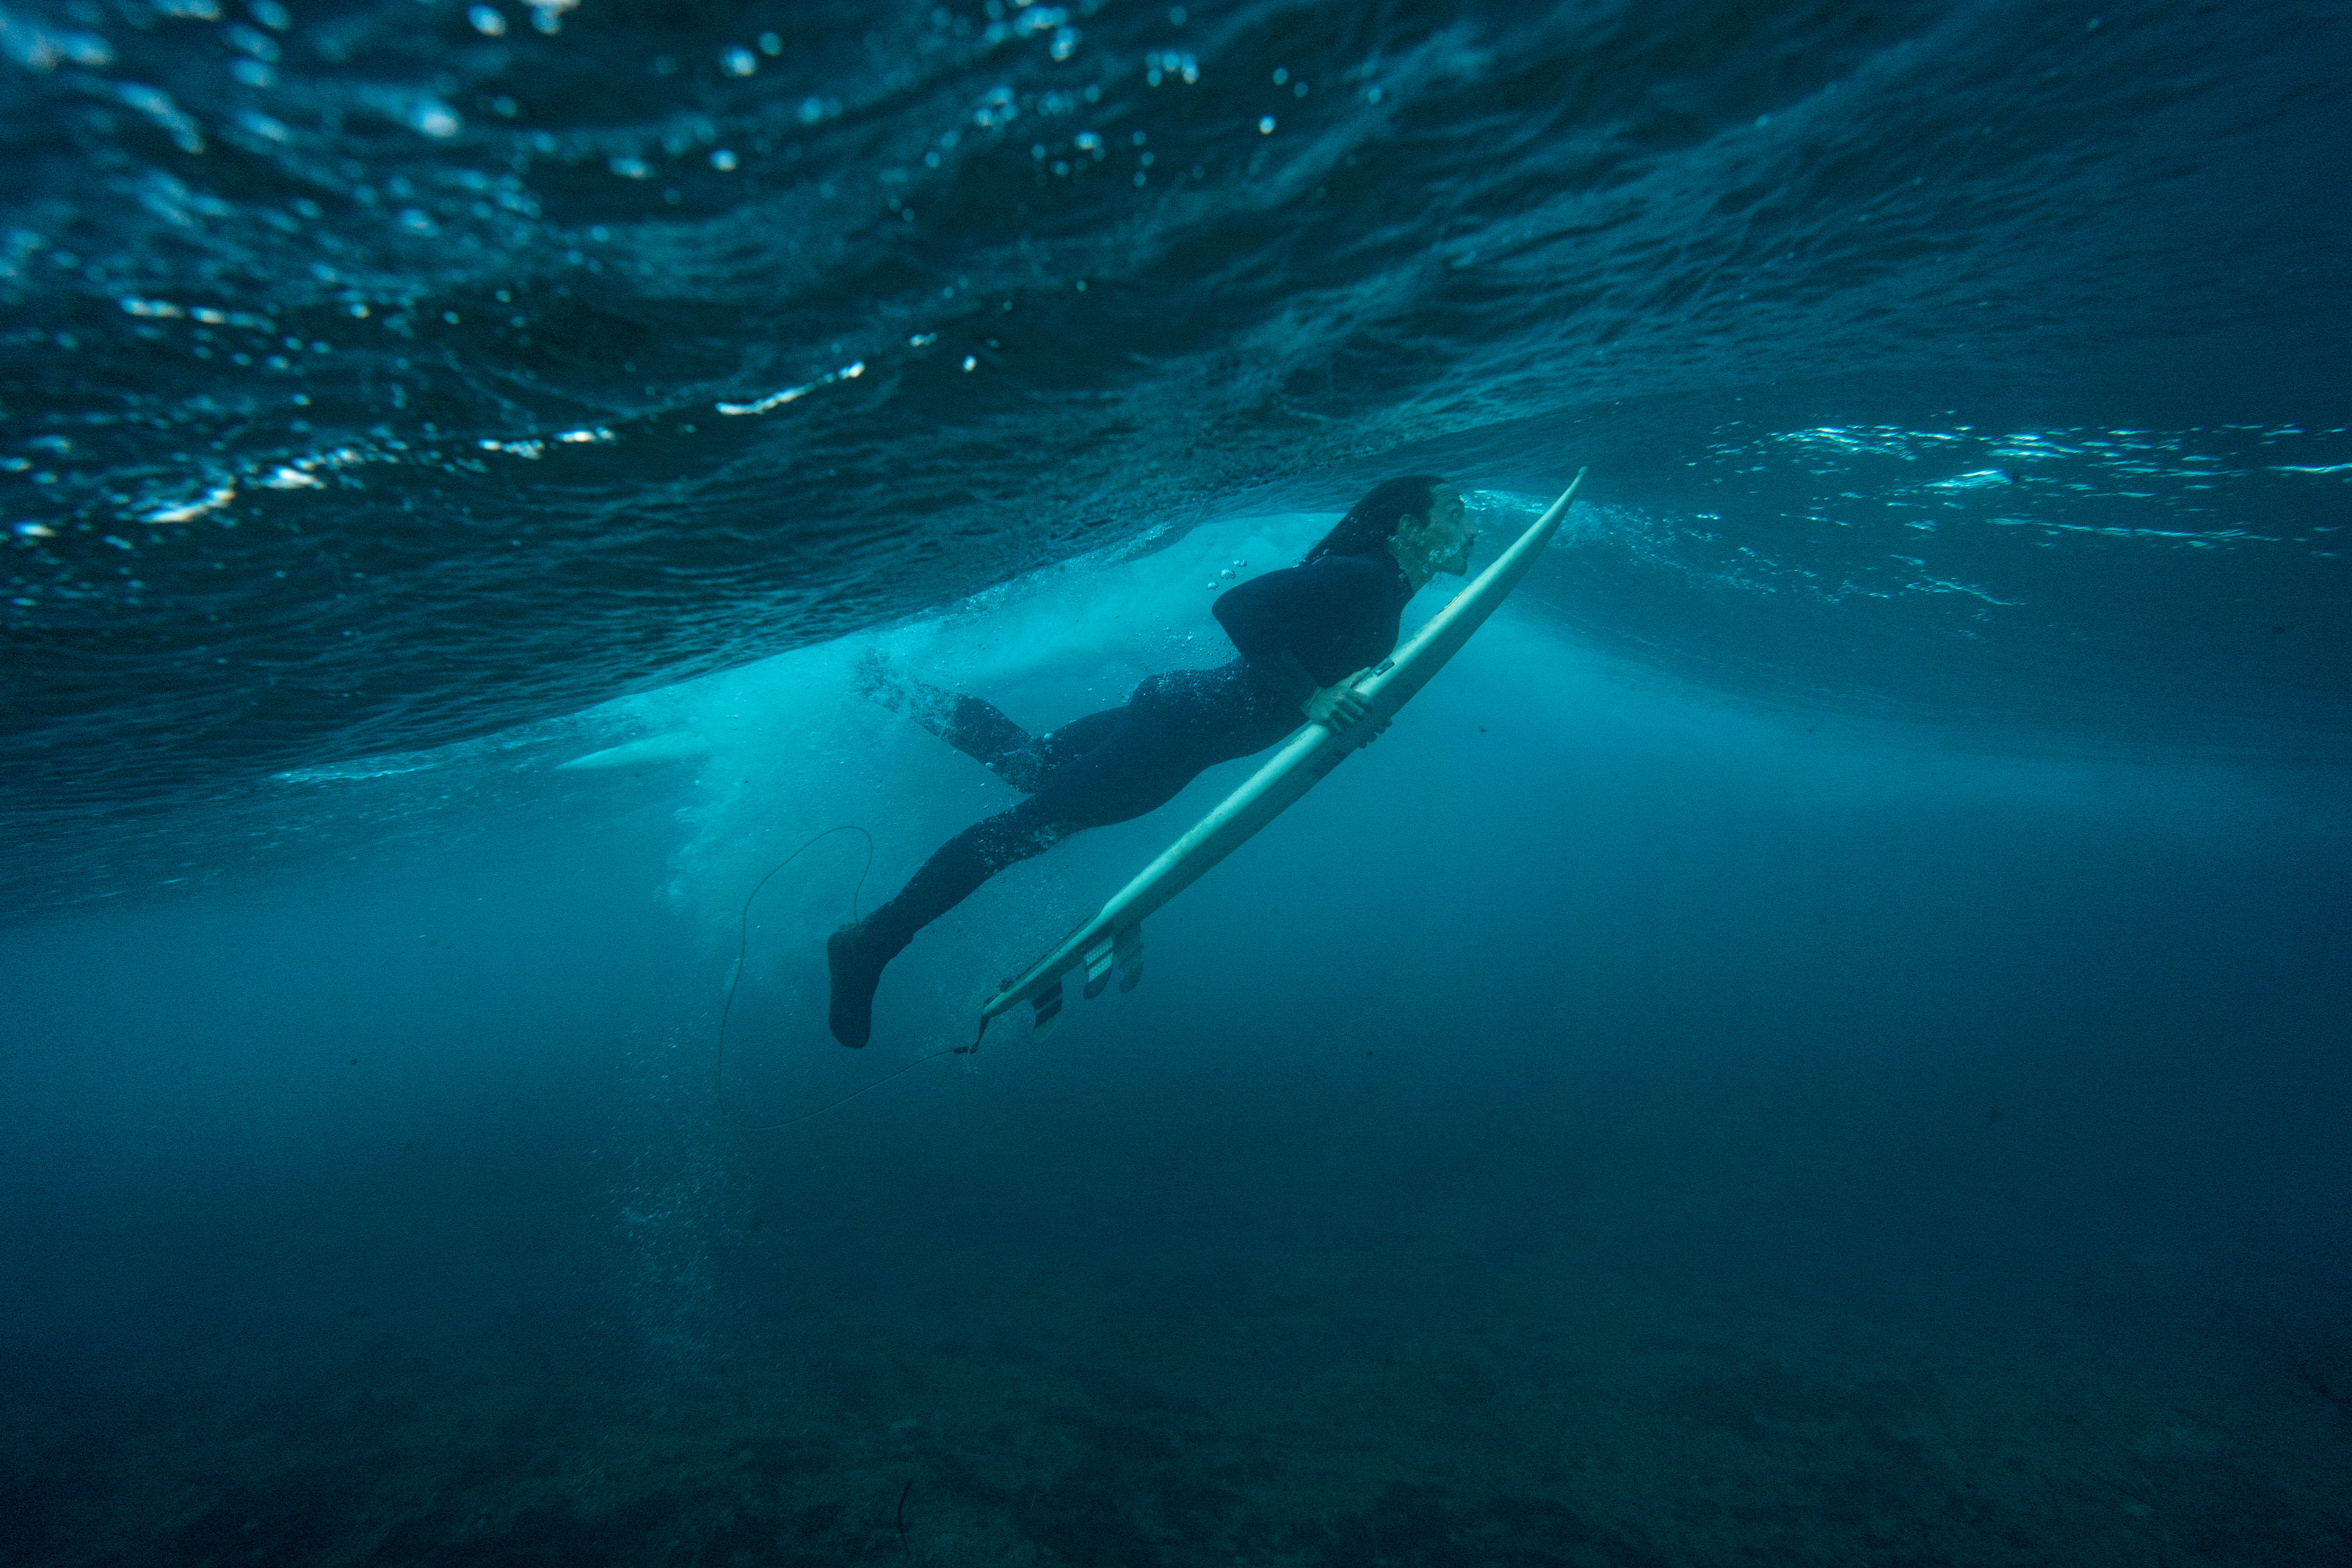 Valerio duck diving underwater